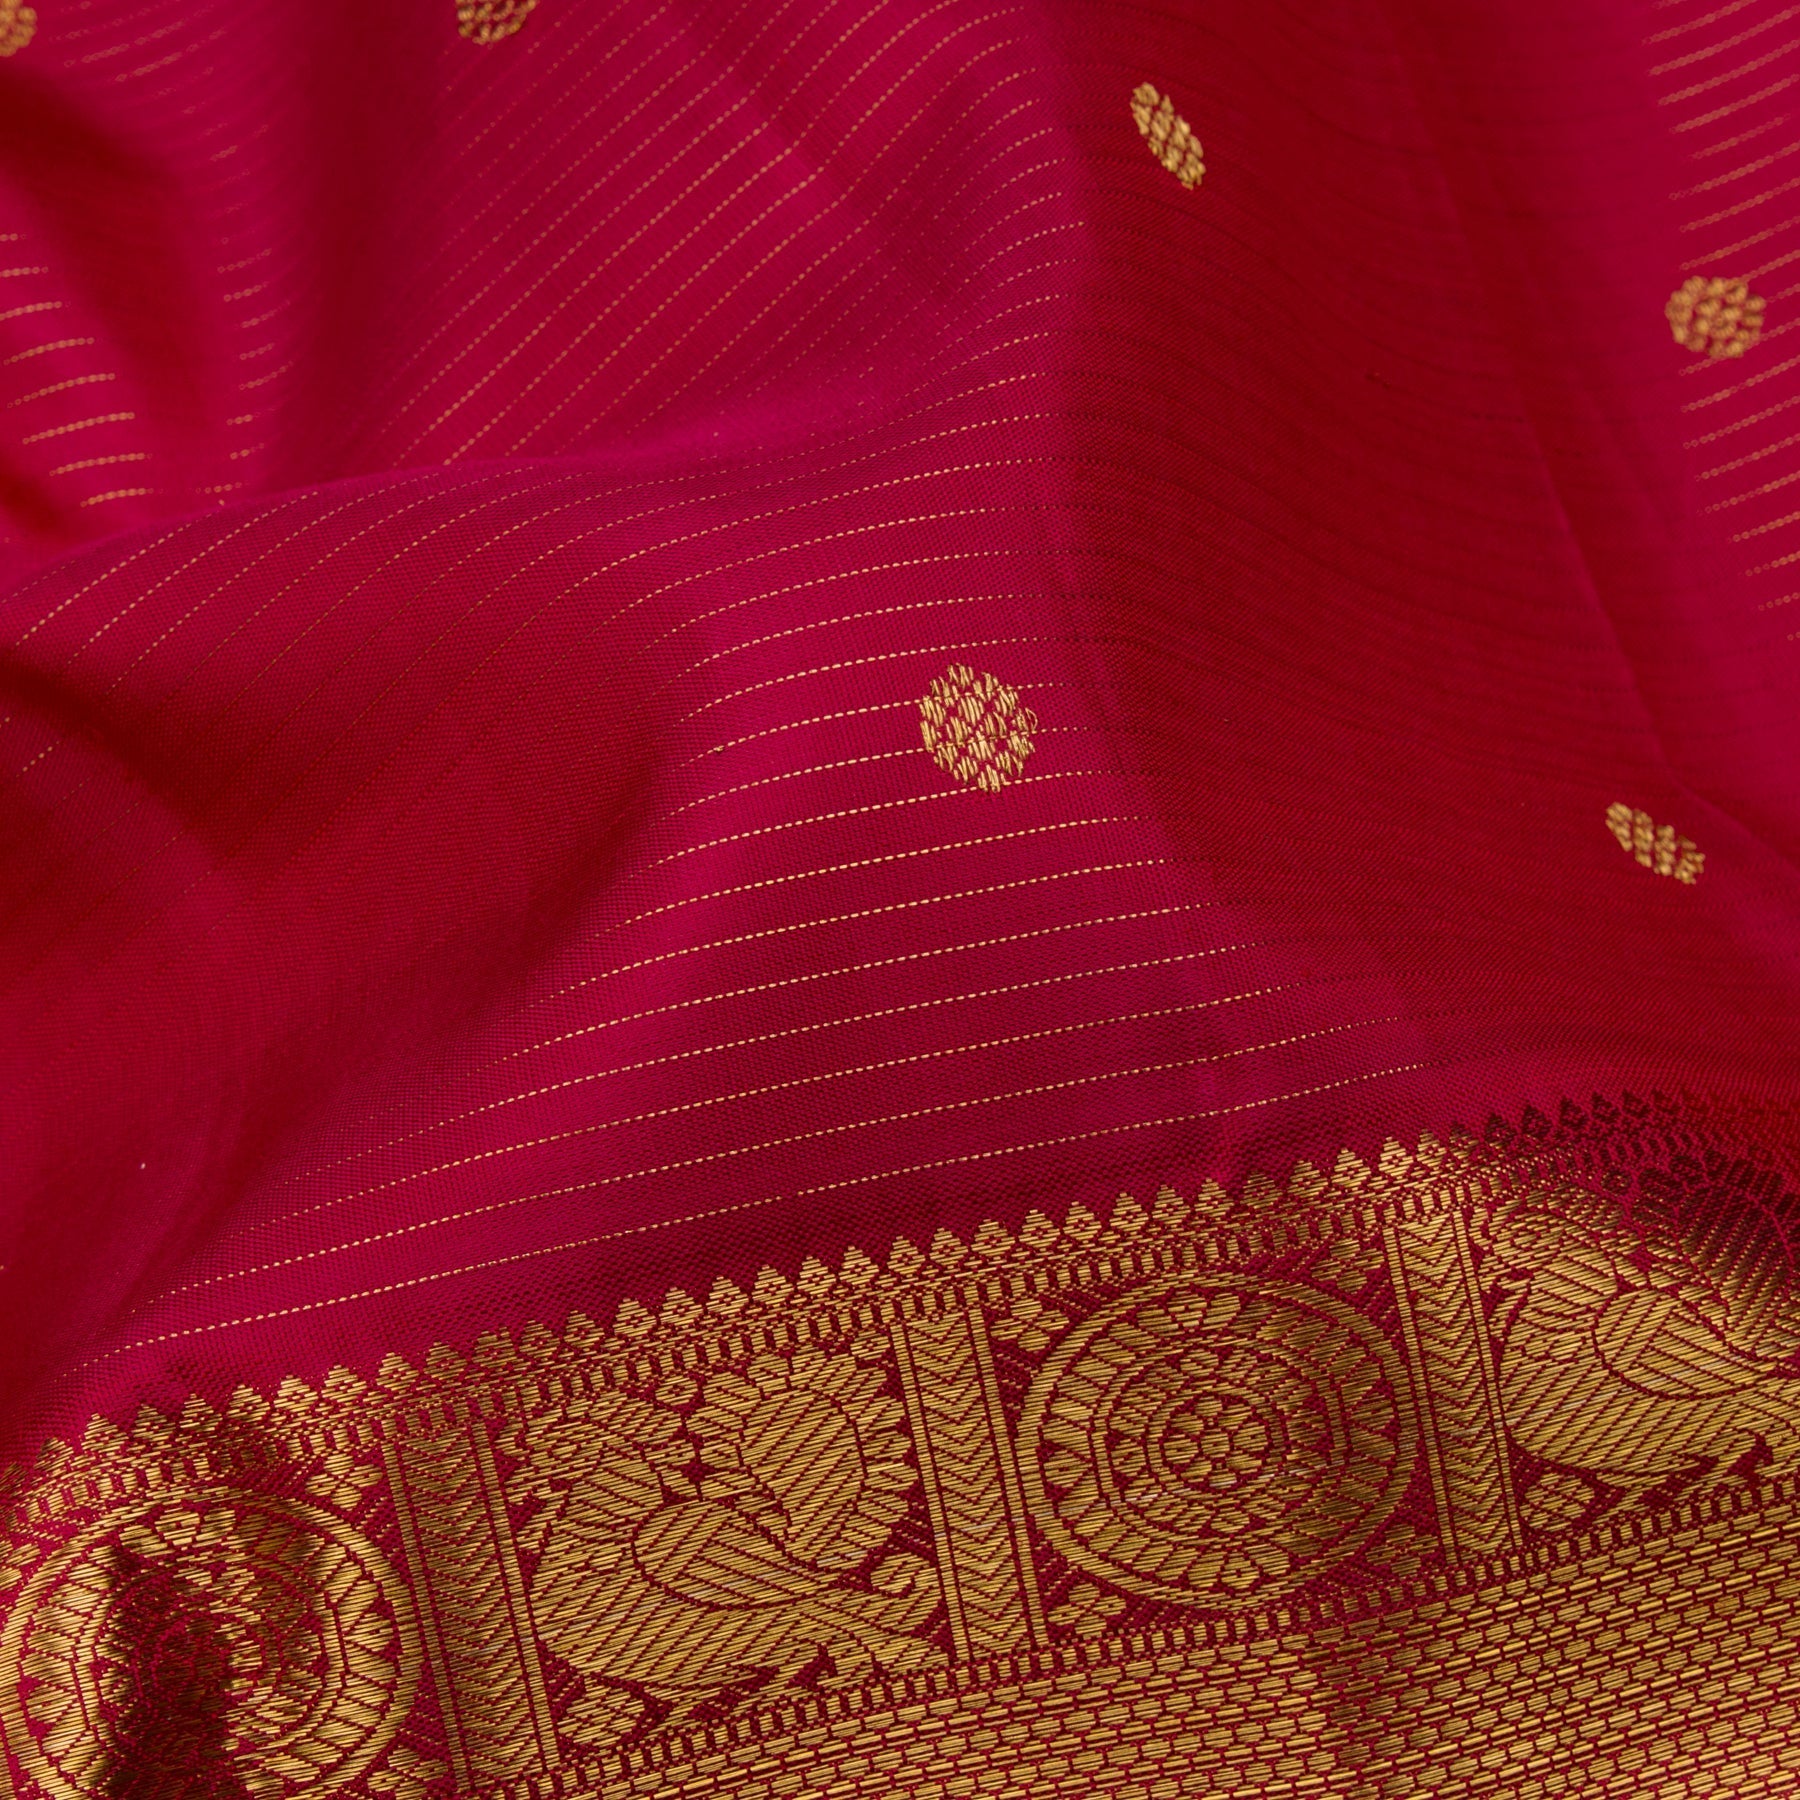 Kanakavalli Kanjivaram Silk Sari 23-110-HS001-11481 - Fabric View